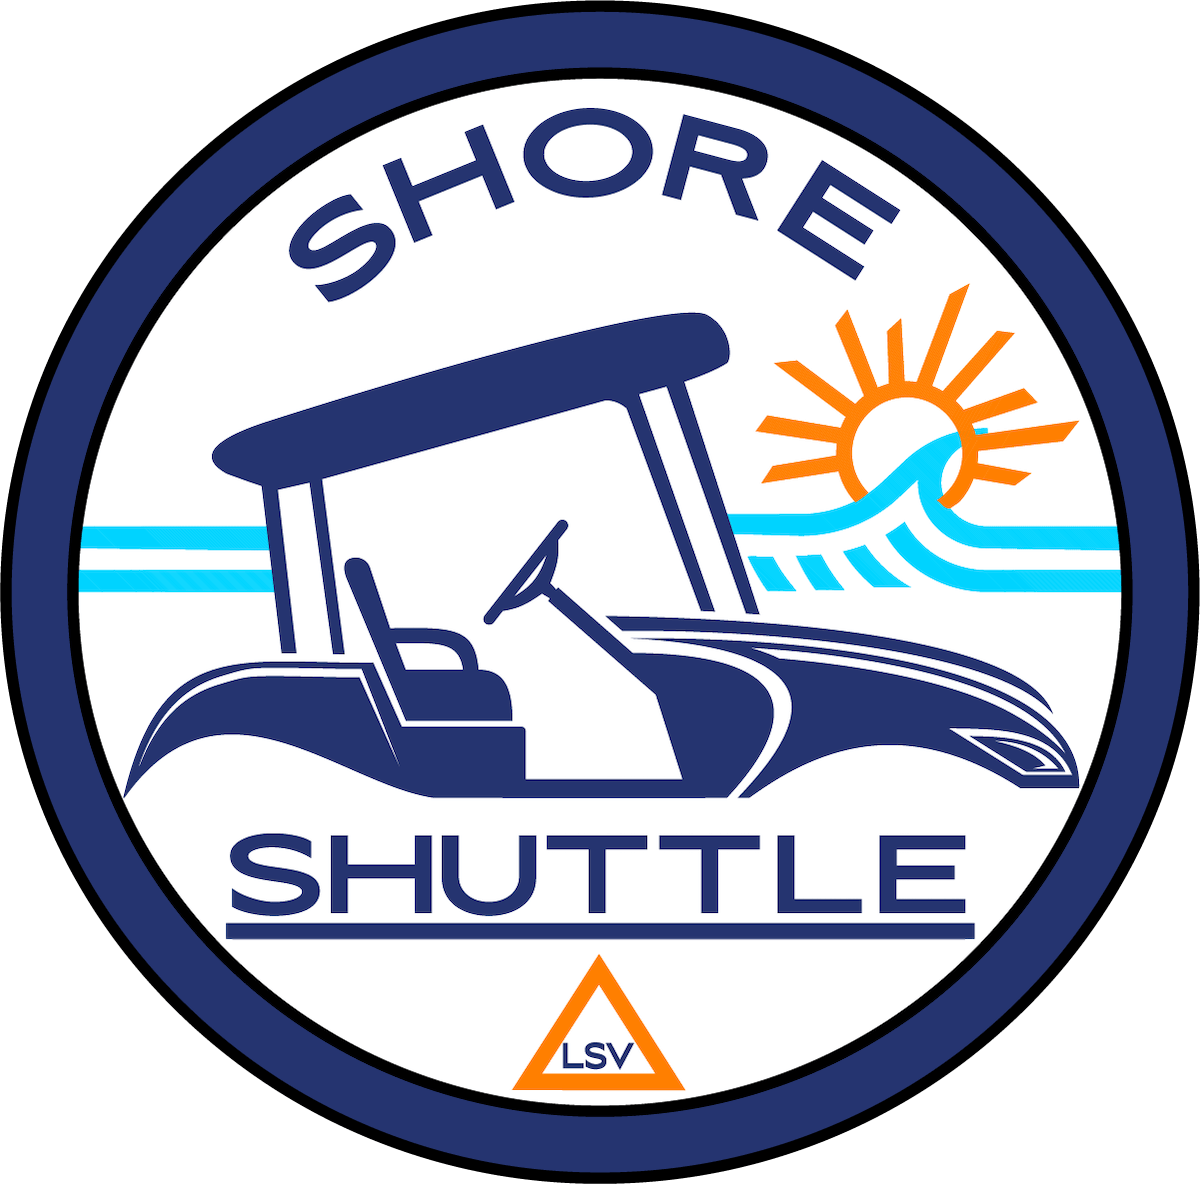 Dennis Shore Shuttle